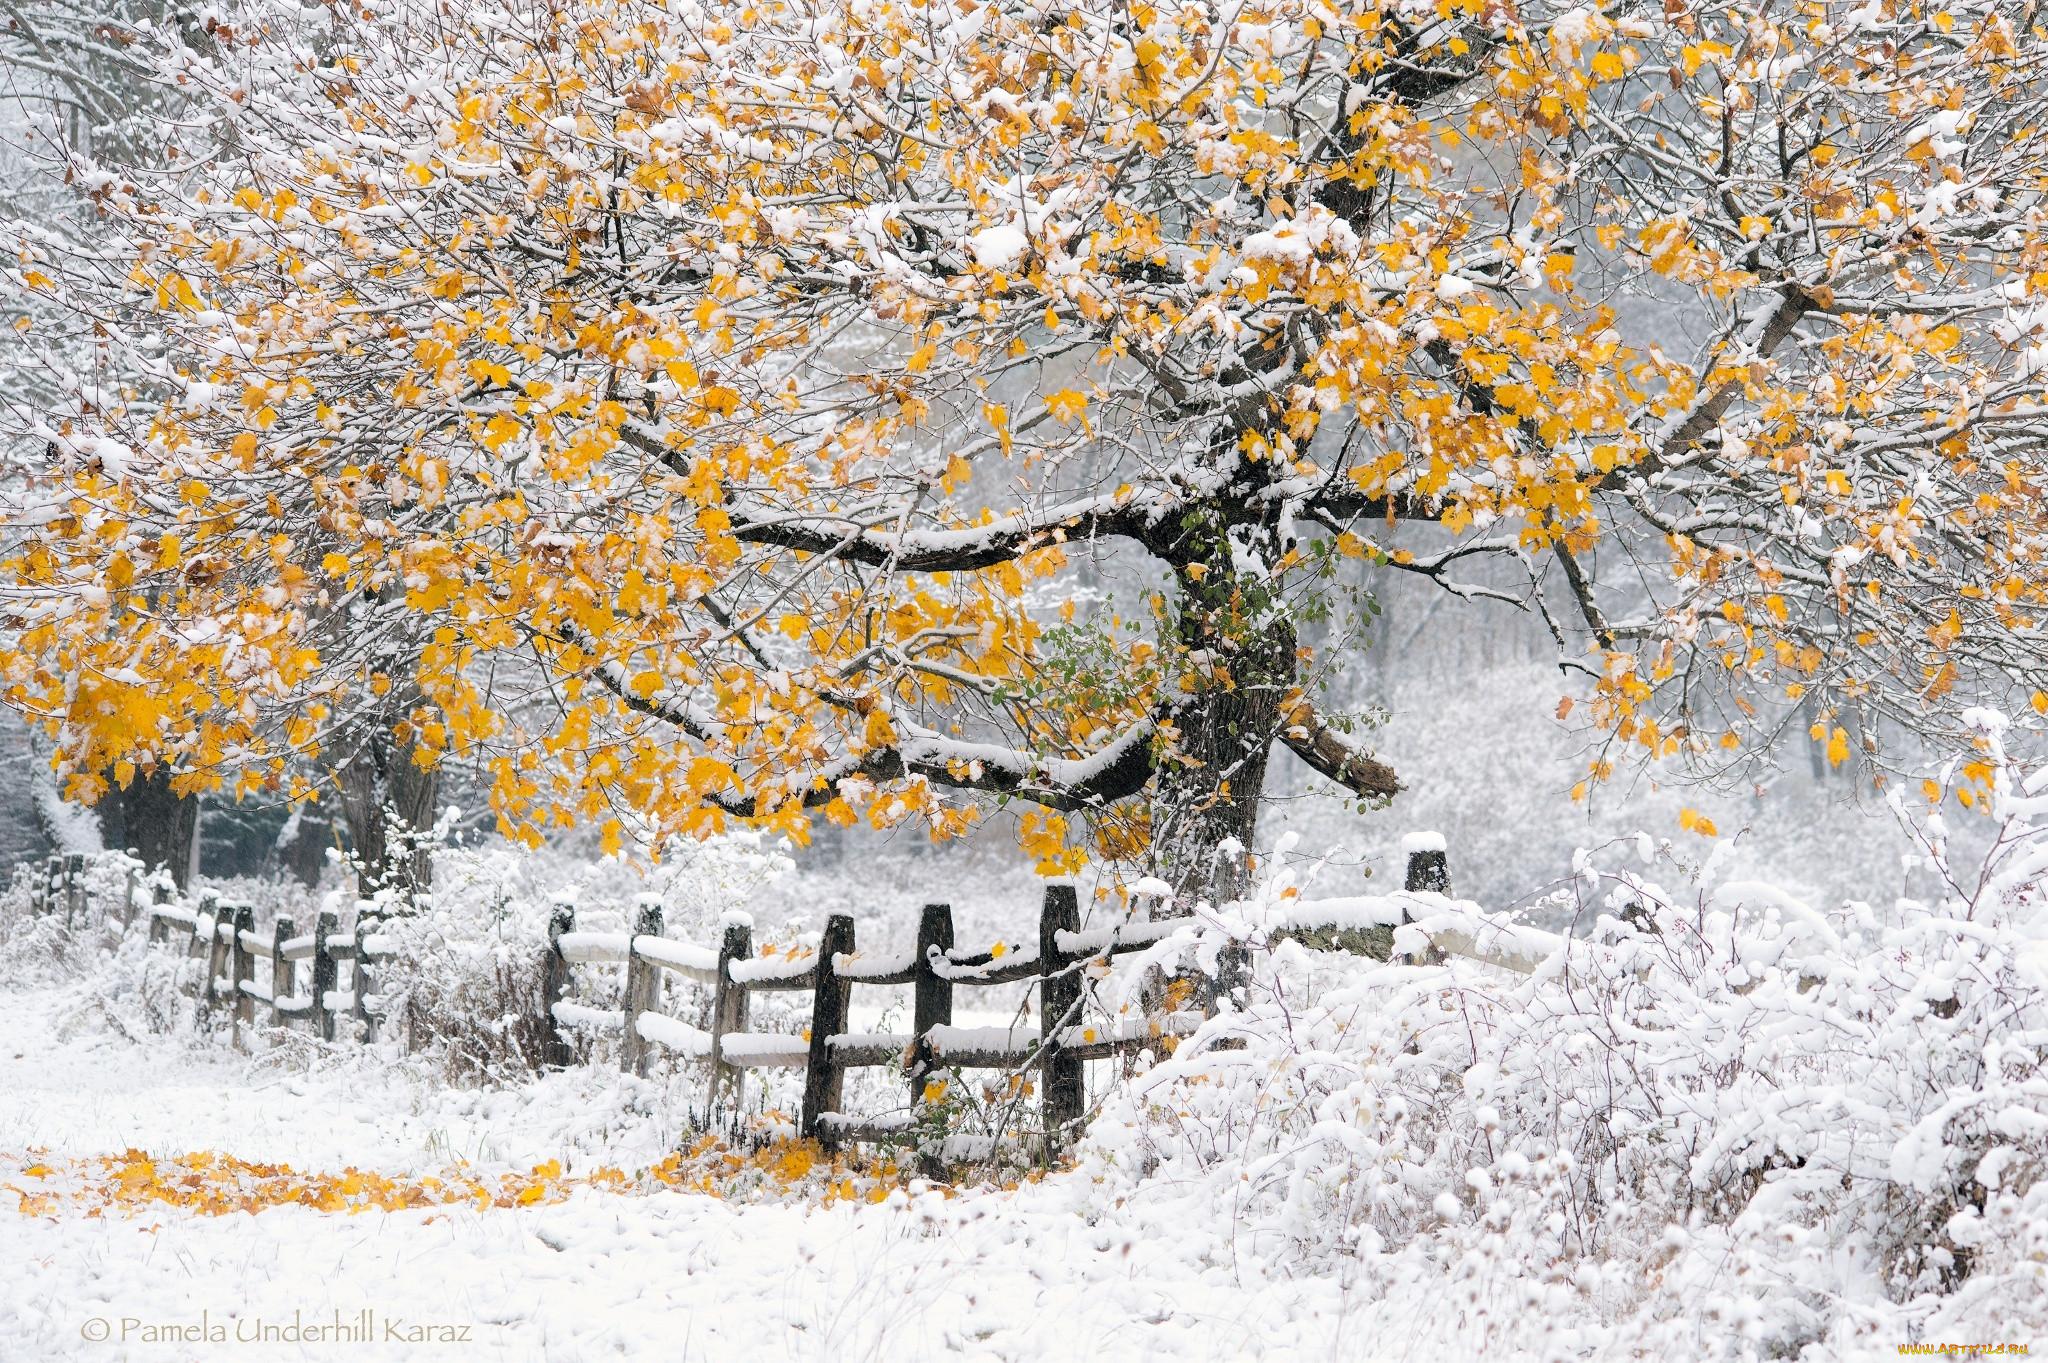 картинки : дерево, природа, снег, зима, след, Осень, Погода, время года,  Водный путь, Финляндия, Октябрь, Финский, Oulu Finland 4912x2760 - - 608014  - красивые картинки - PxHere